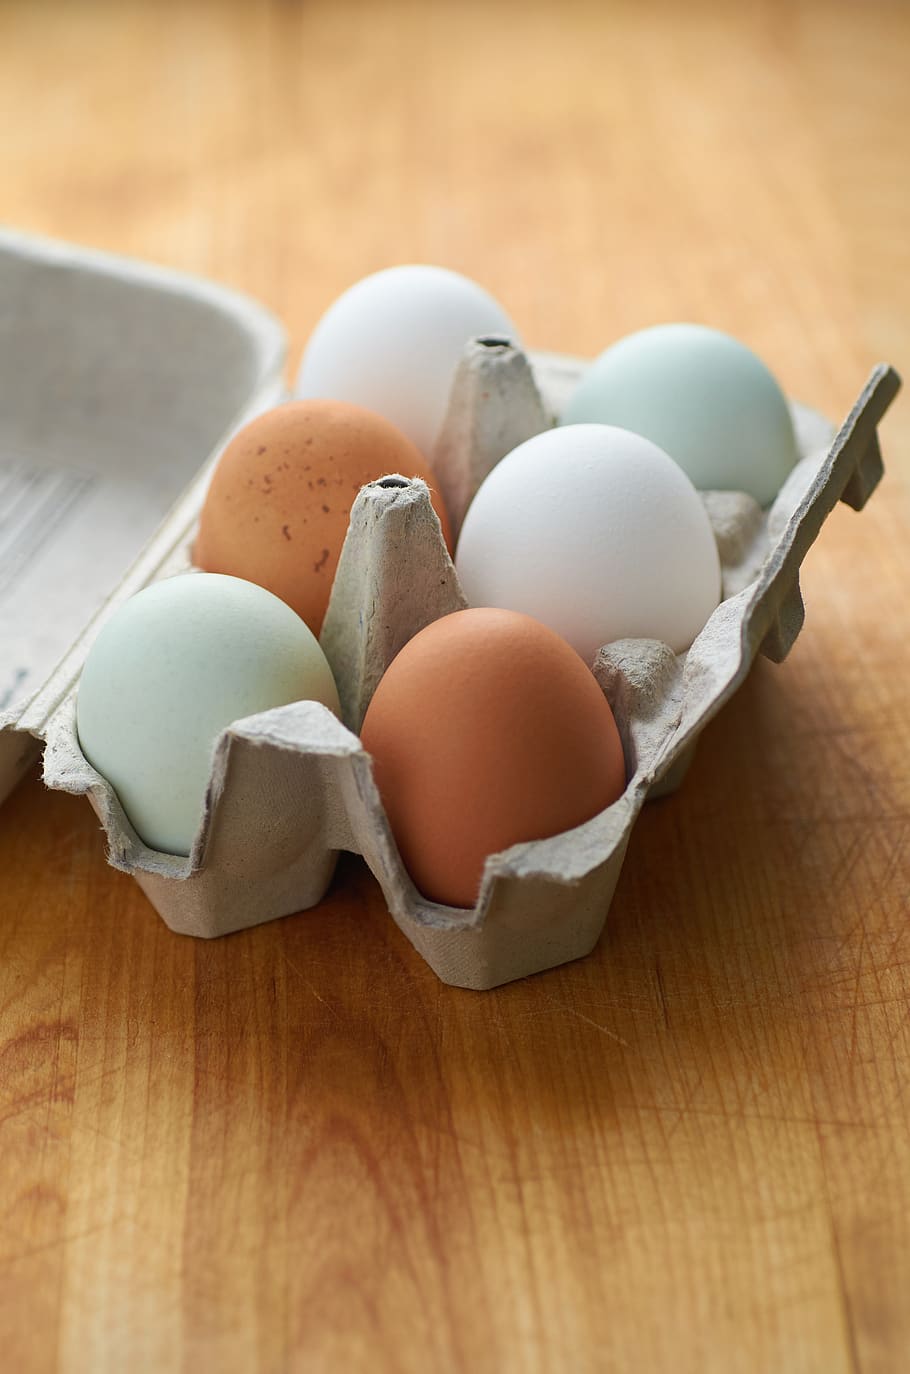 granja, fresco, huevos, mitad, docena, cartón, pollo, color, cáscara, huevo